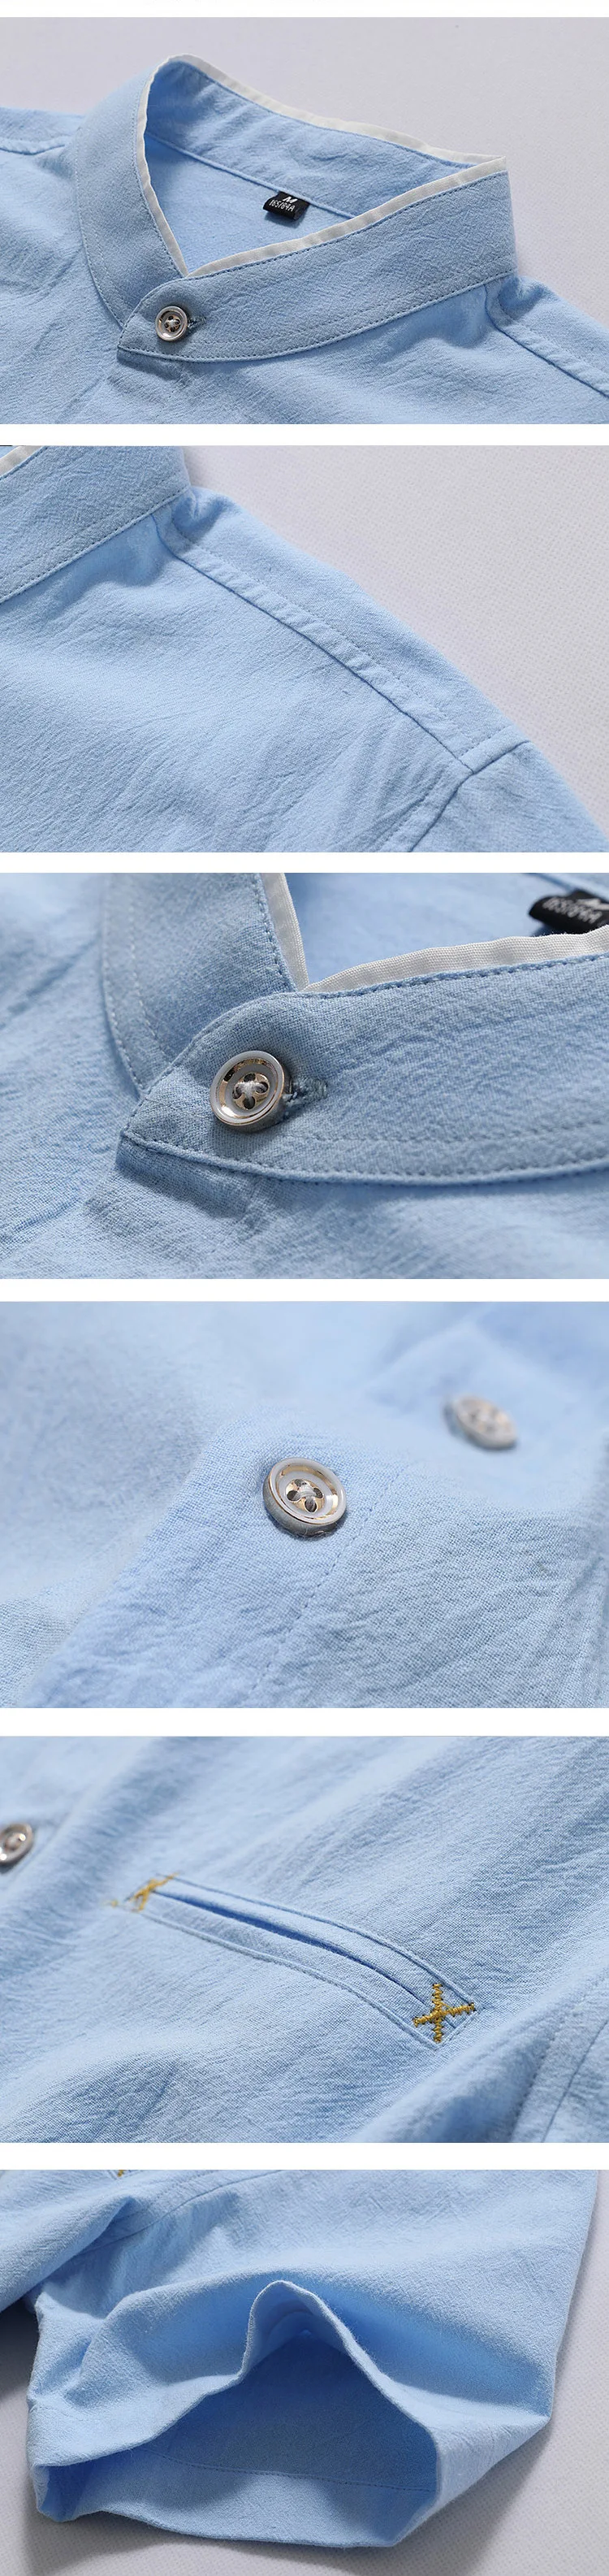 Высокое качество стенд рубашка с воротником в Китае новый Повседневное белье хлопок короткий рукав мужская рубашка тонкий Большие размеры